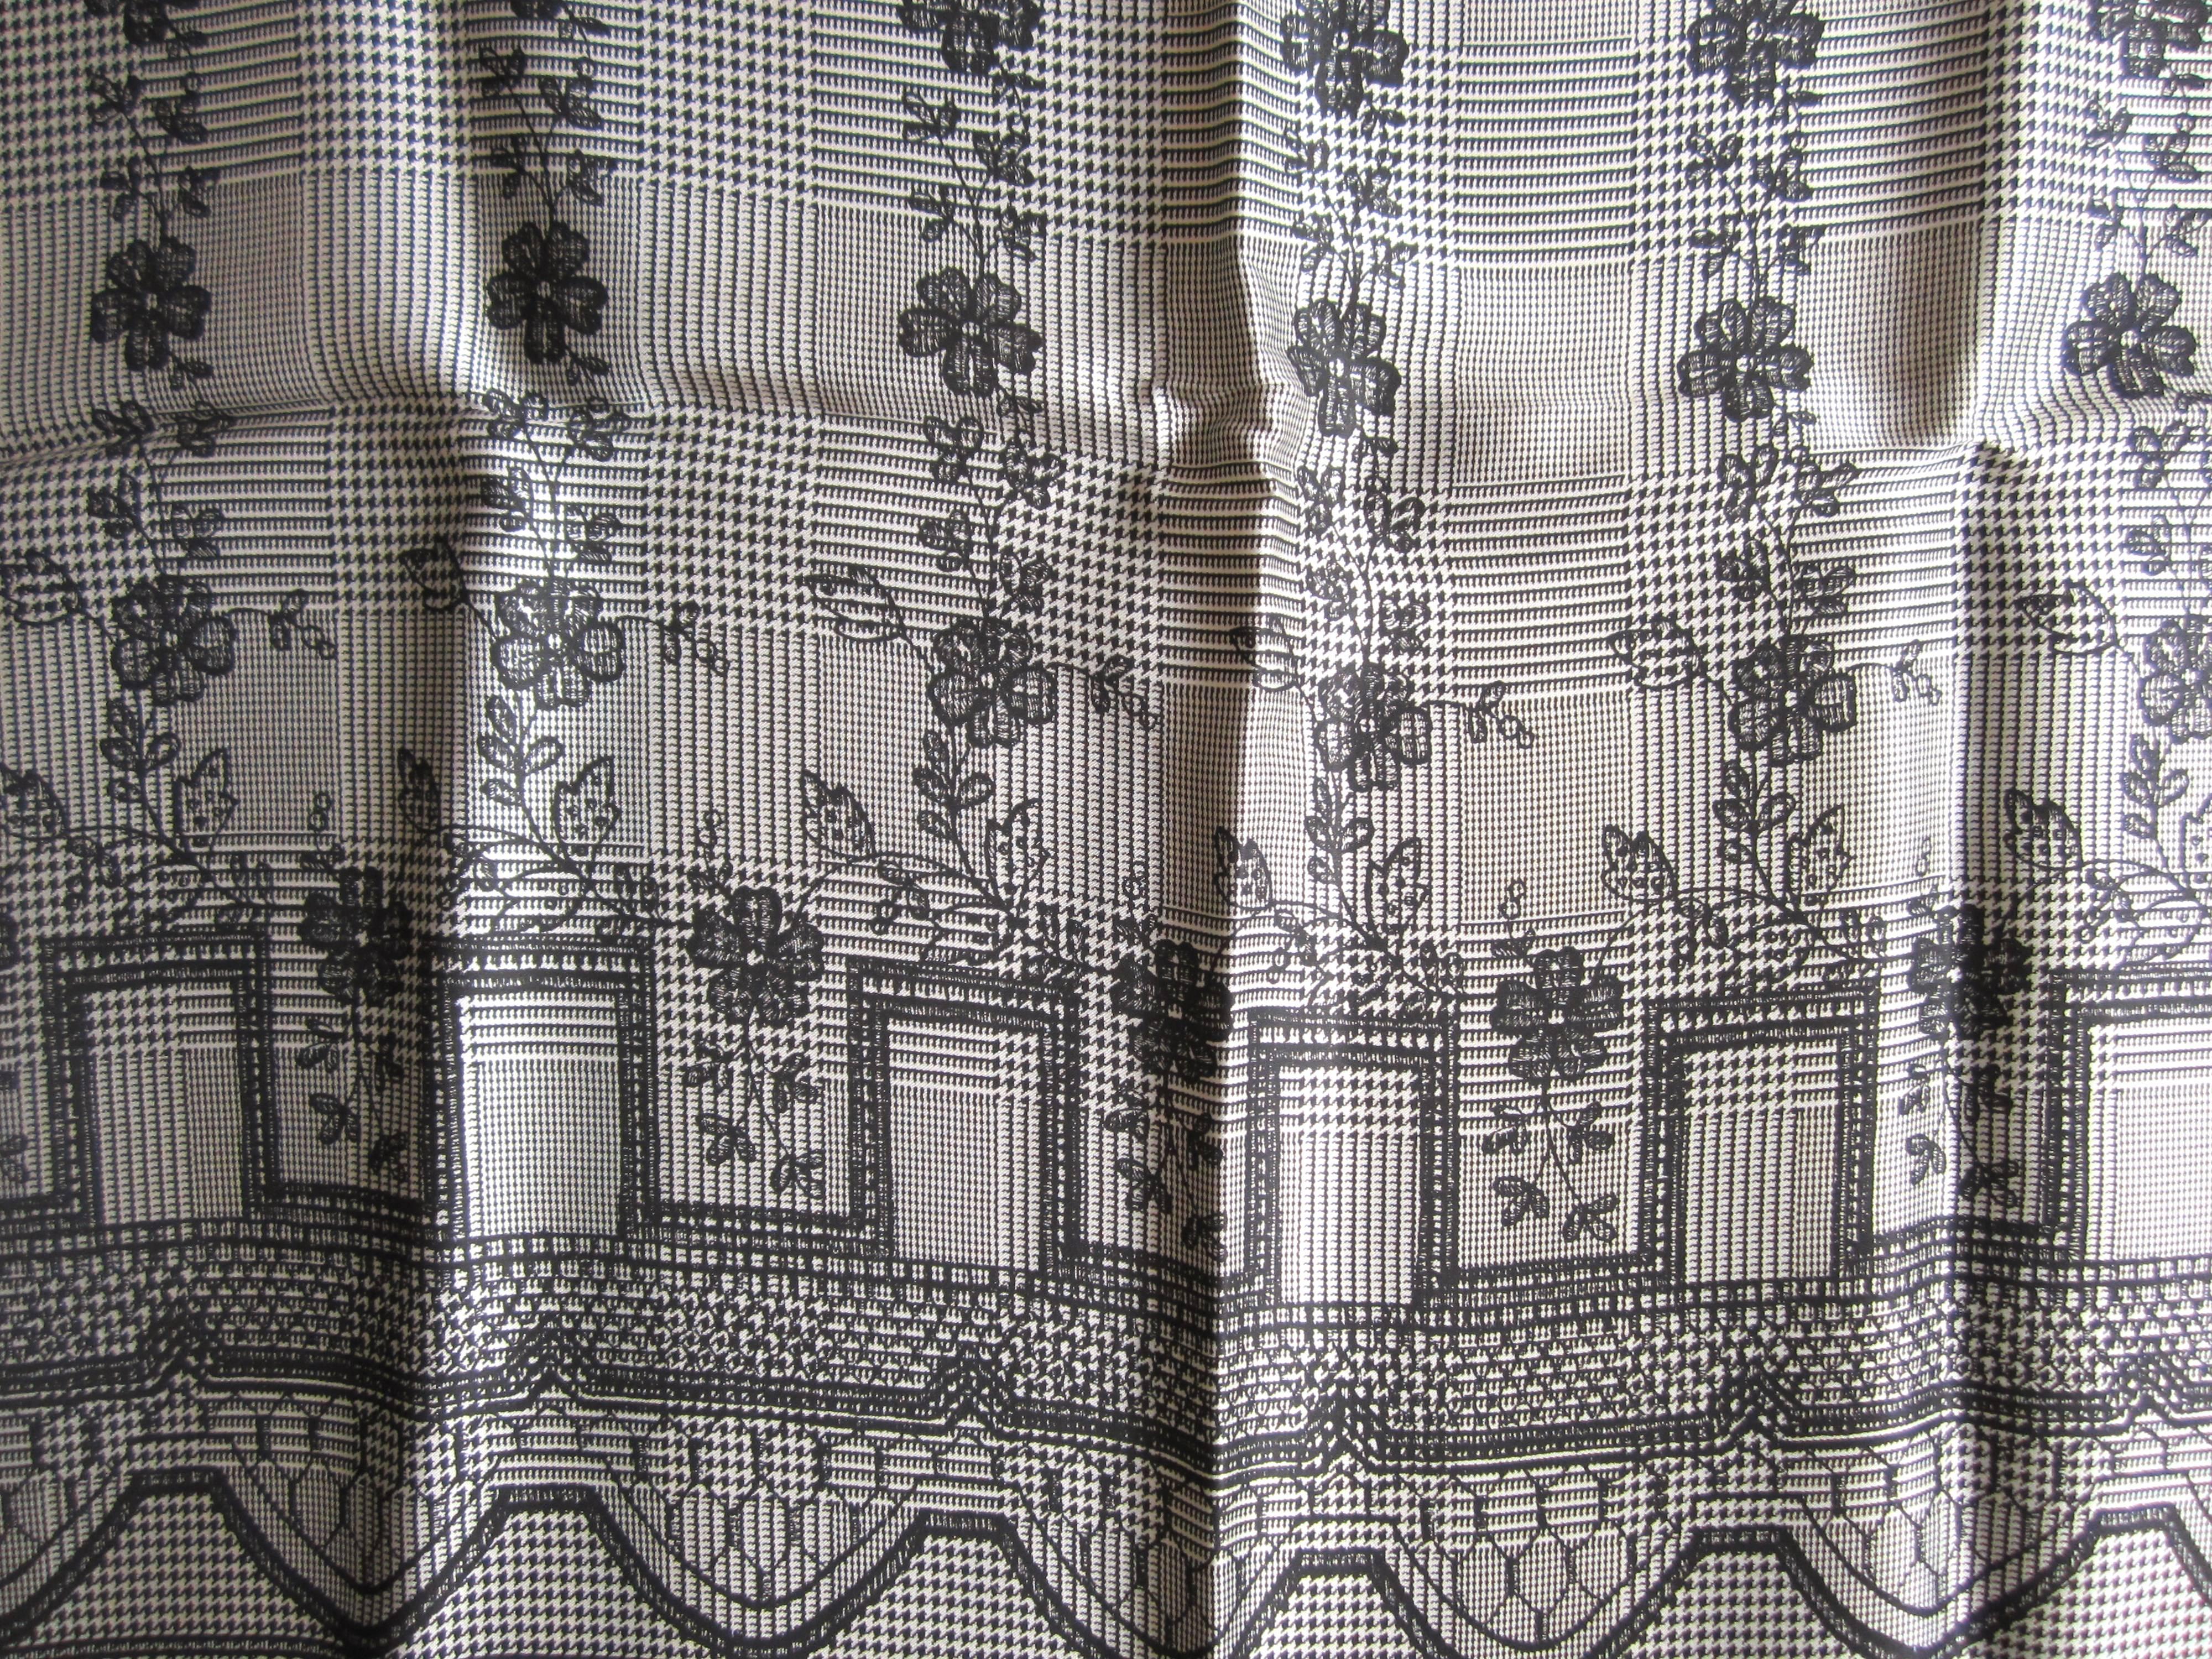 Seidenschal von Escada. Hergestellt in Italien, gekauft bei Neiman Marcus in den späten 1980er und frühen 90er Jahren. Aufbewahrt und nie getragen. Maße 34 x 34. Dies ist aus einer umfangreichen Sammlung von Hopi, Zuni, Navajo, Southwestern,